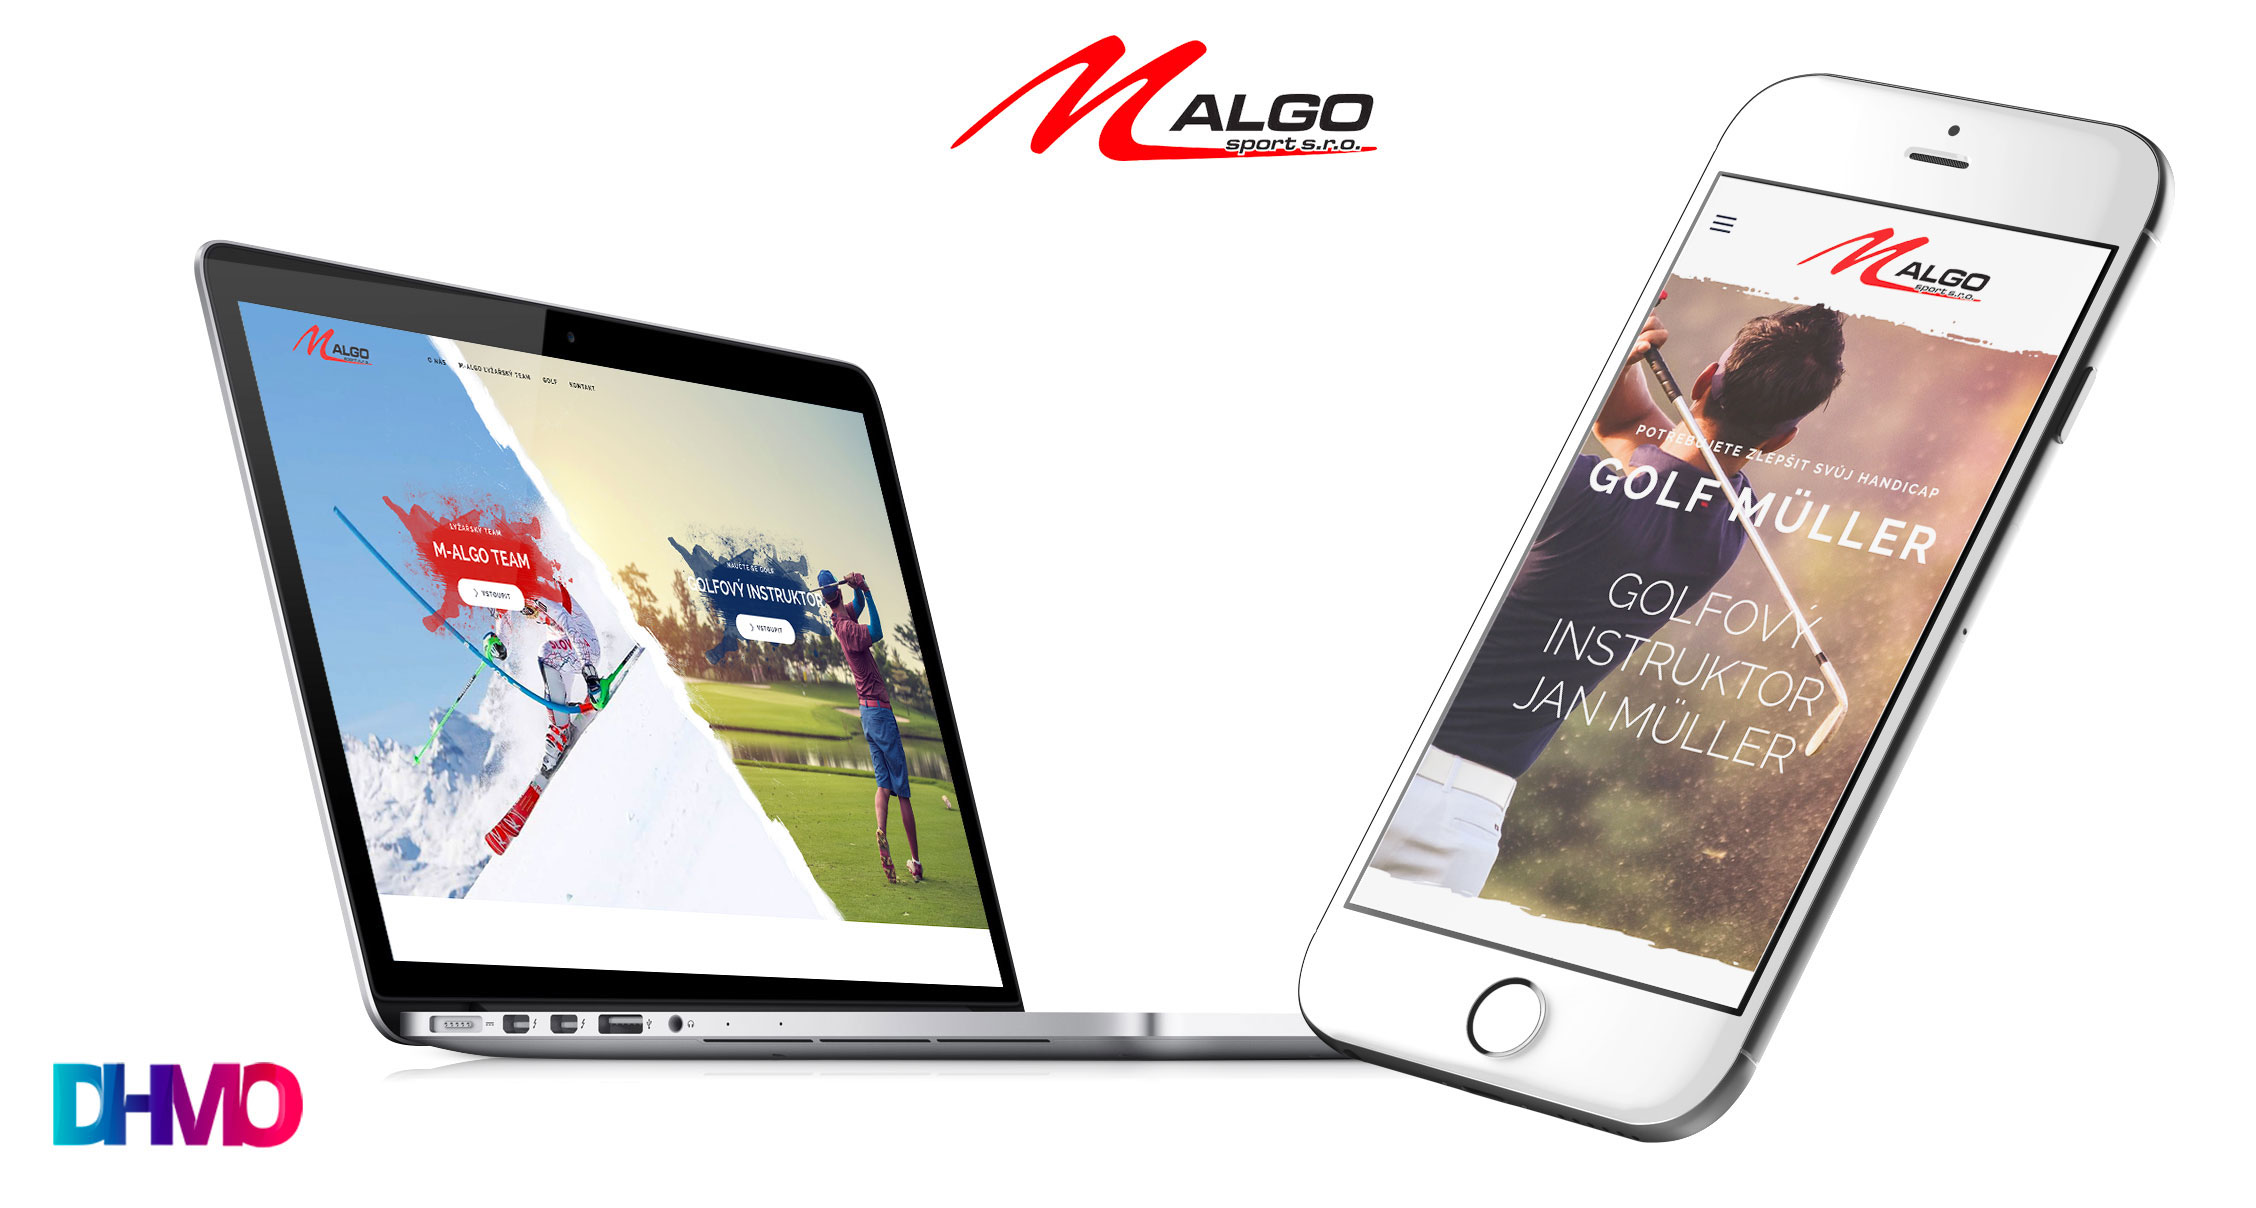 M-Algo web design